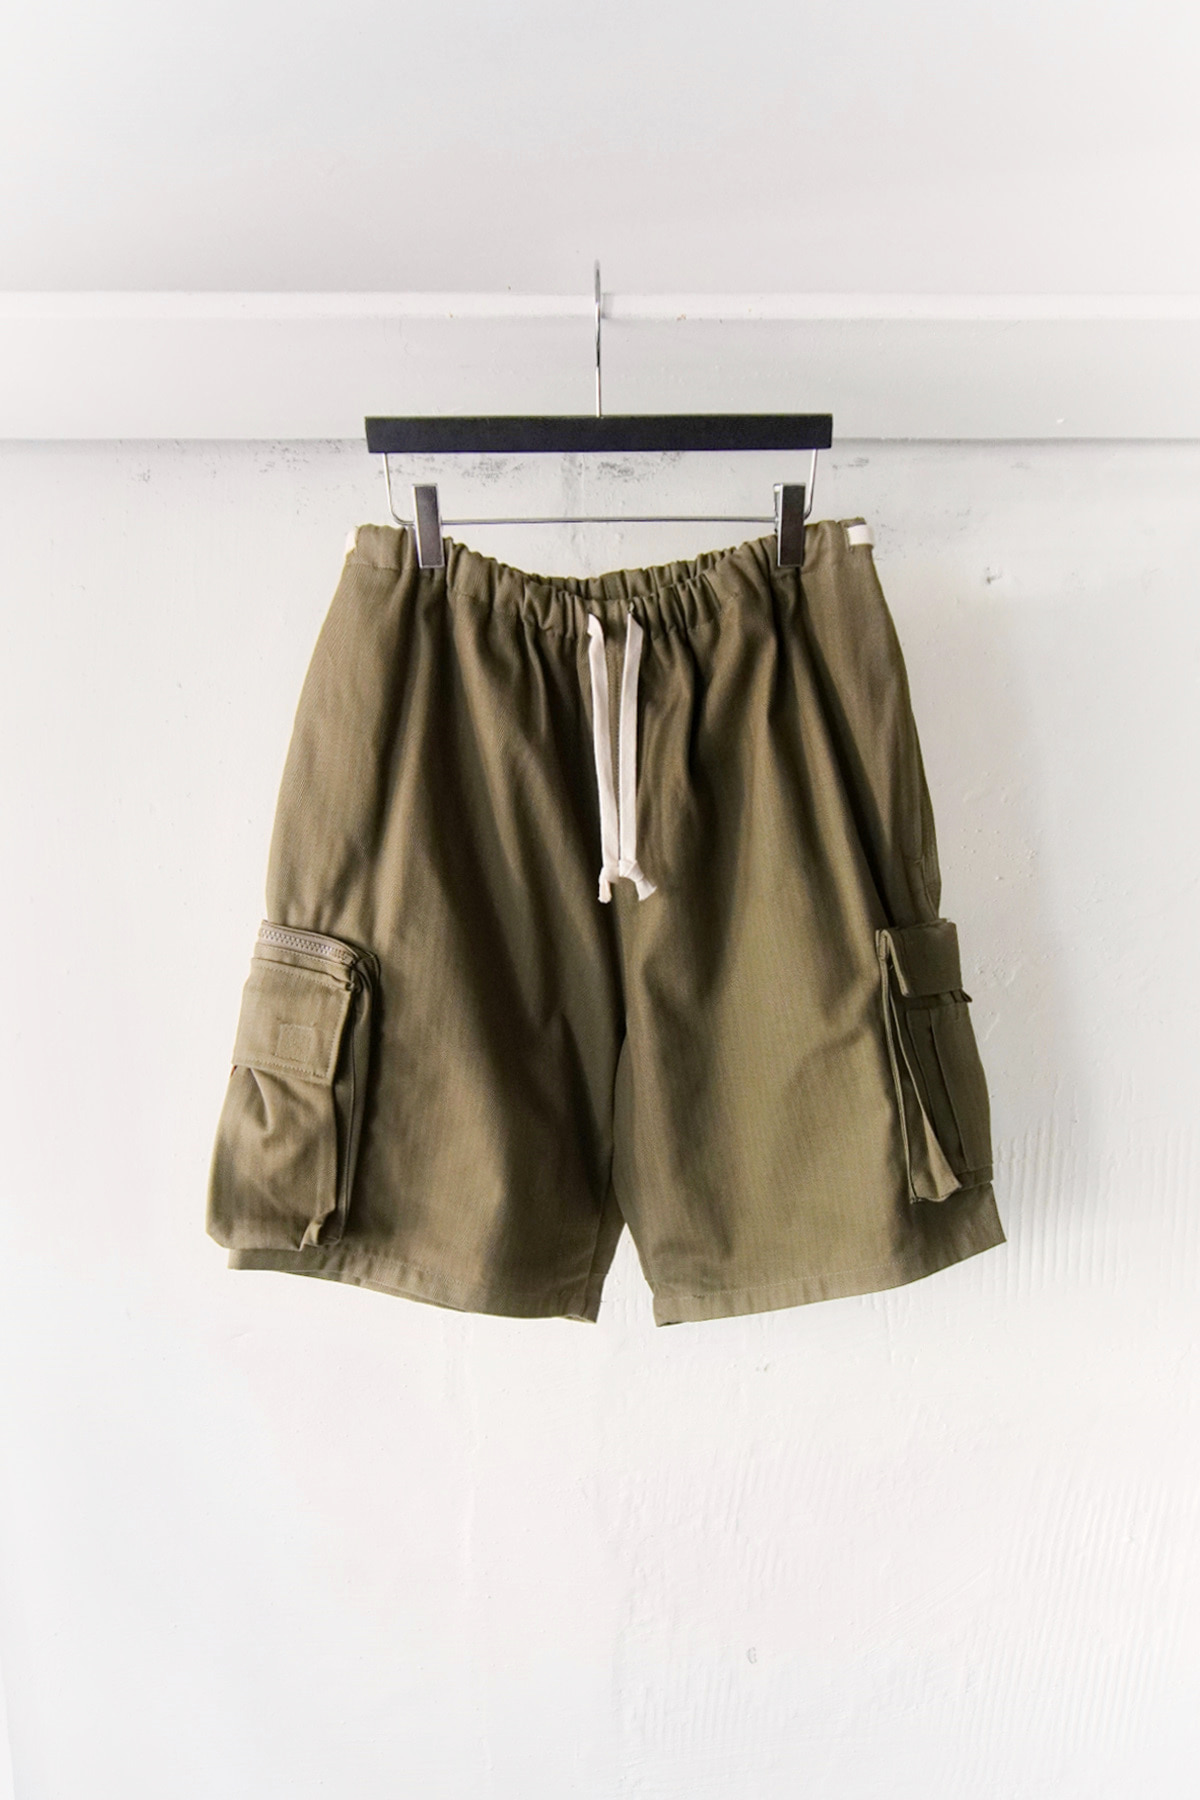 [KENNETH FIELD] Guide Shorts Ⅱ Herringbone - Olive